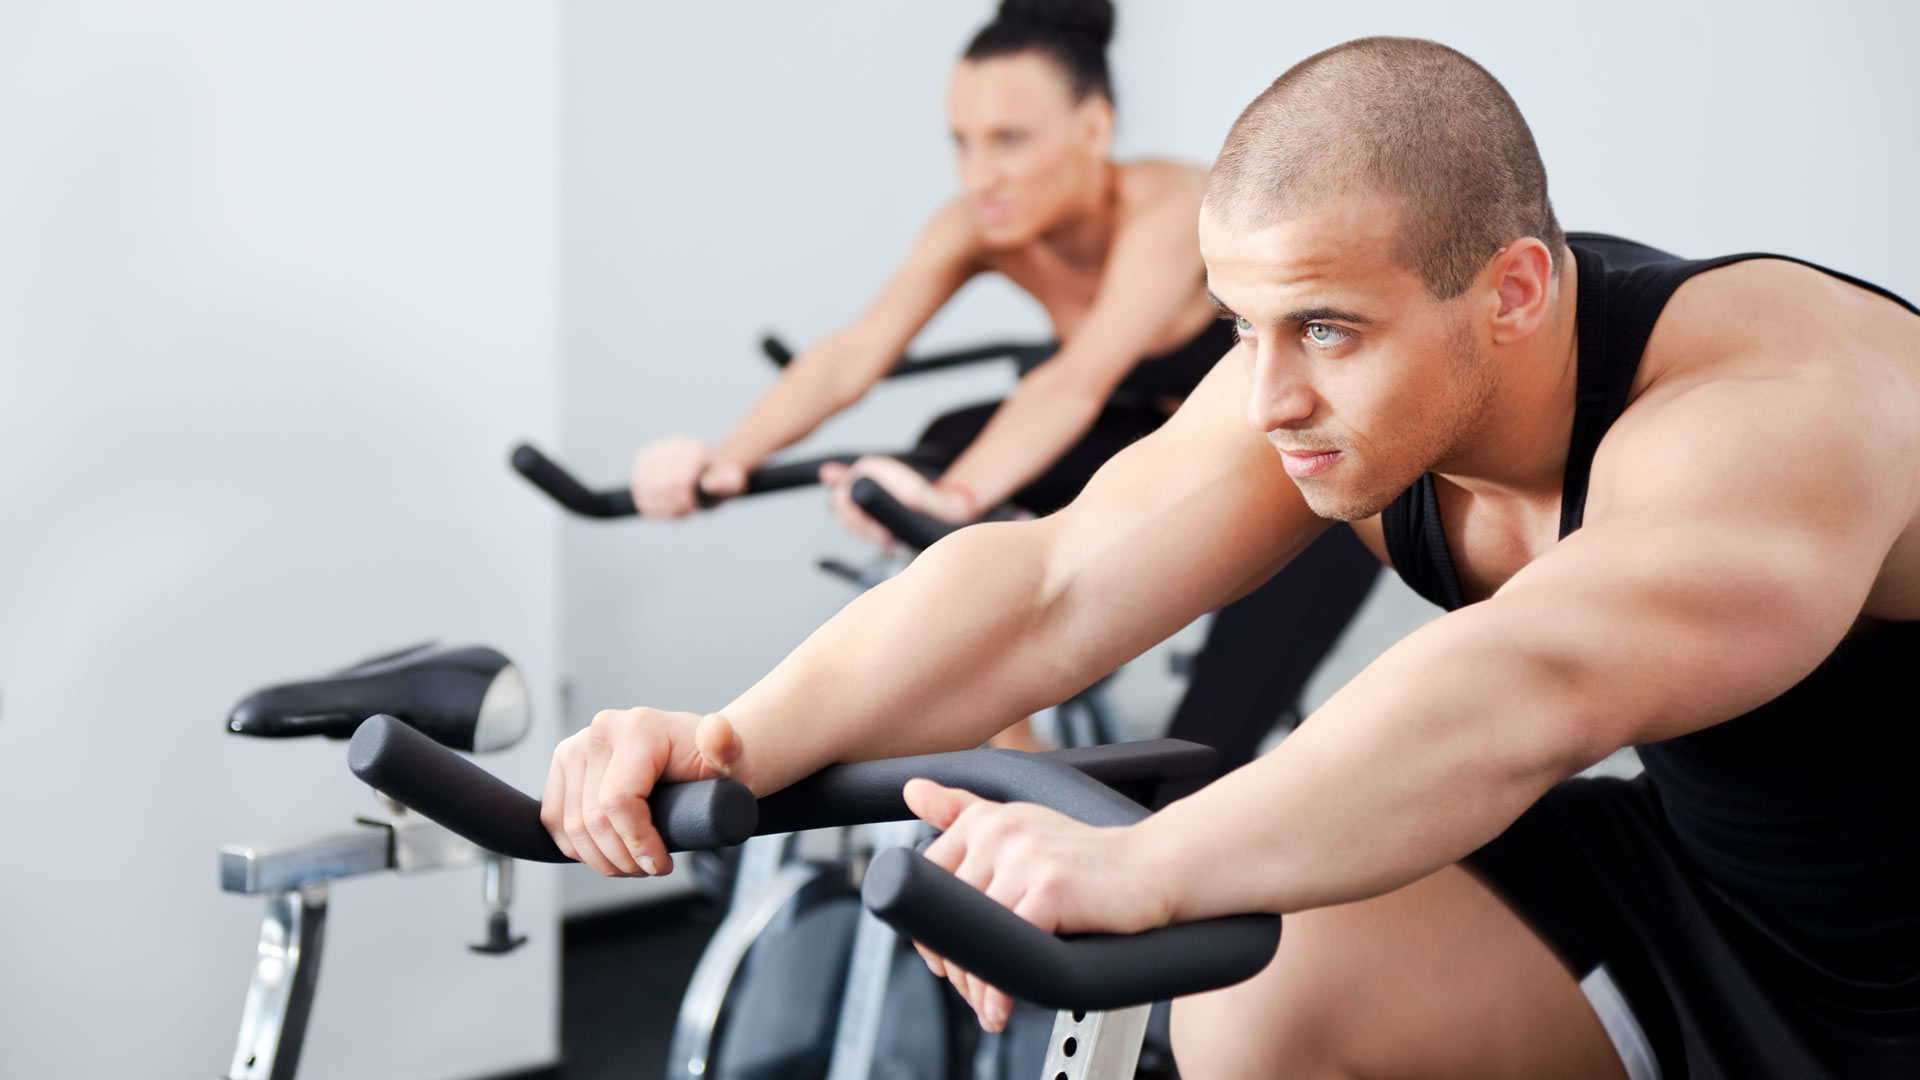 Los hombres que hacen ejercicio tienen más riesgo de muerte súbita que las mujeres